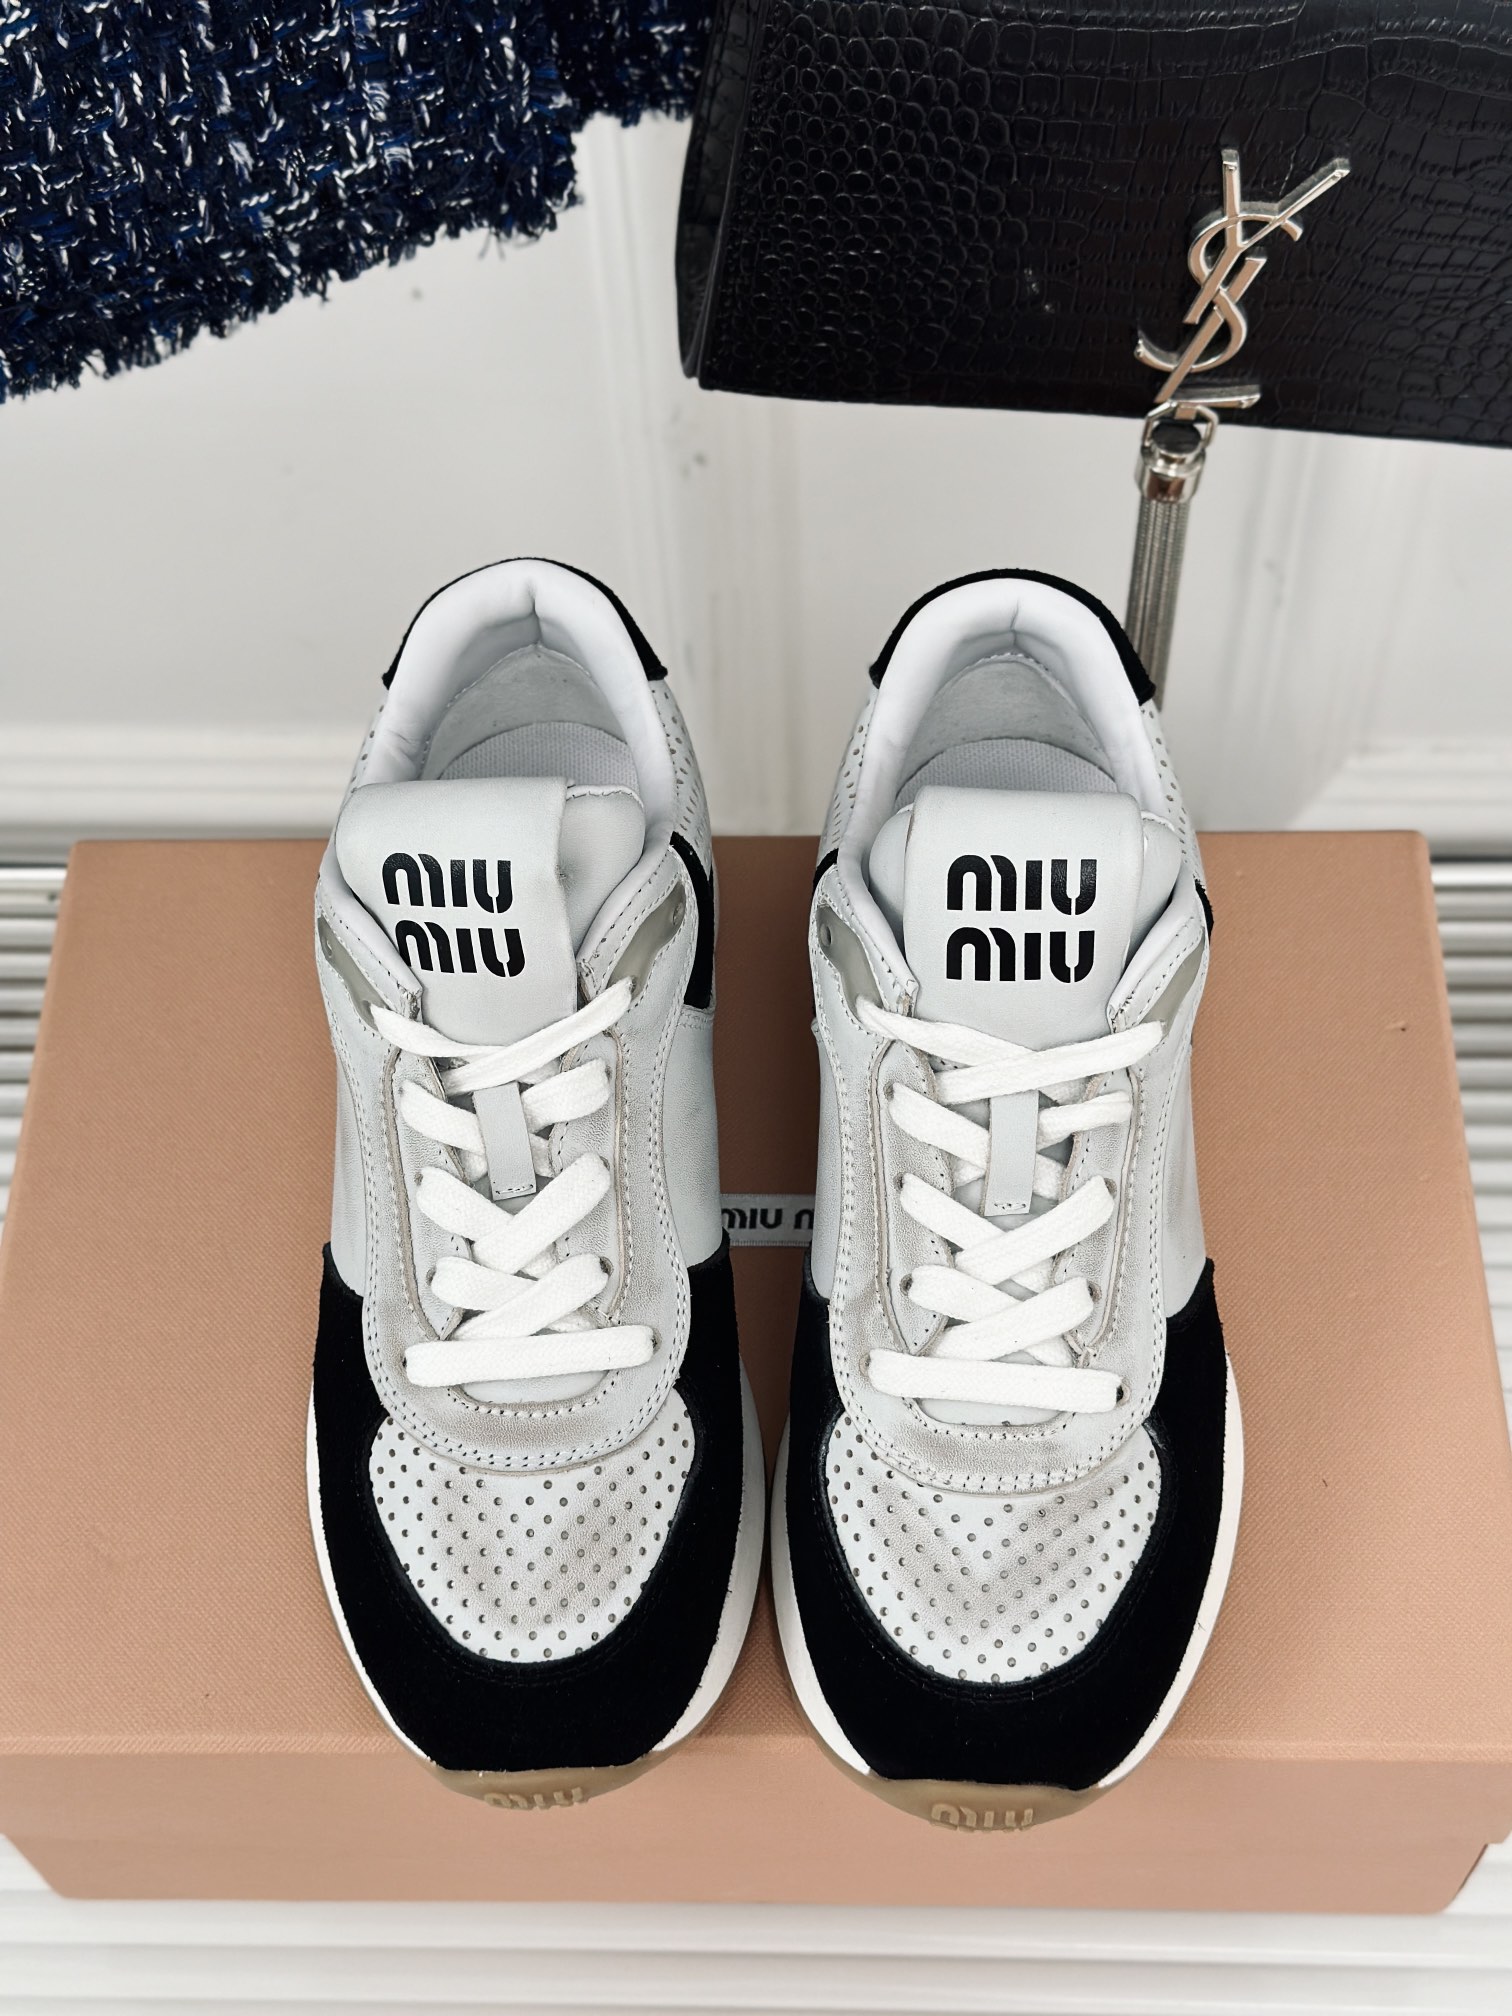 MiuMiu/缪缪24s早春新品复古休闲运动鞋️️简约的运动板鞋设计极具辨识度的鞋舌打造佛系甜美的休闲风